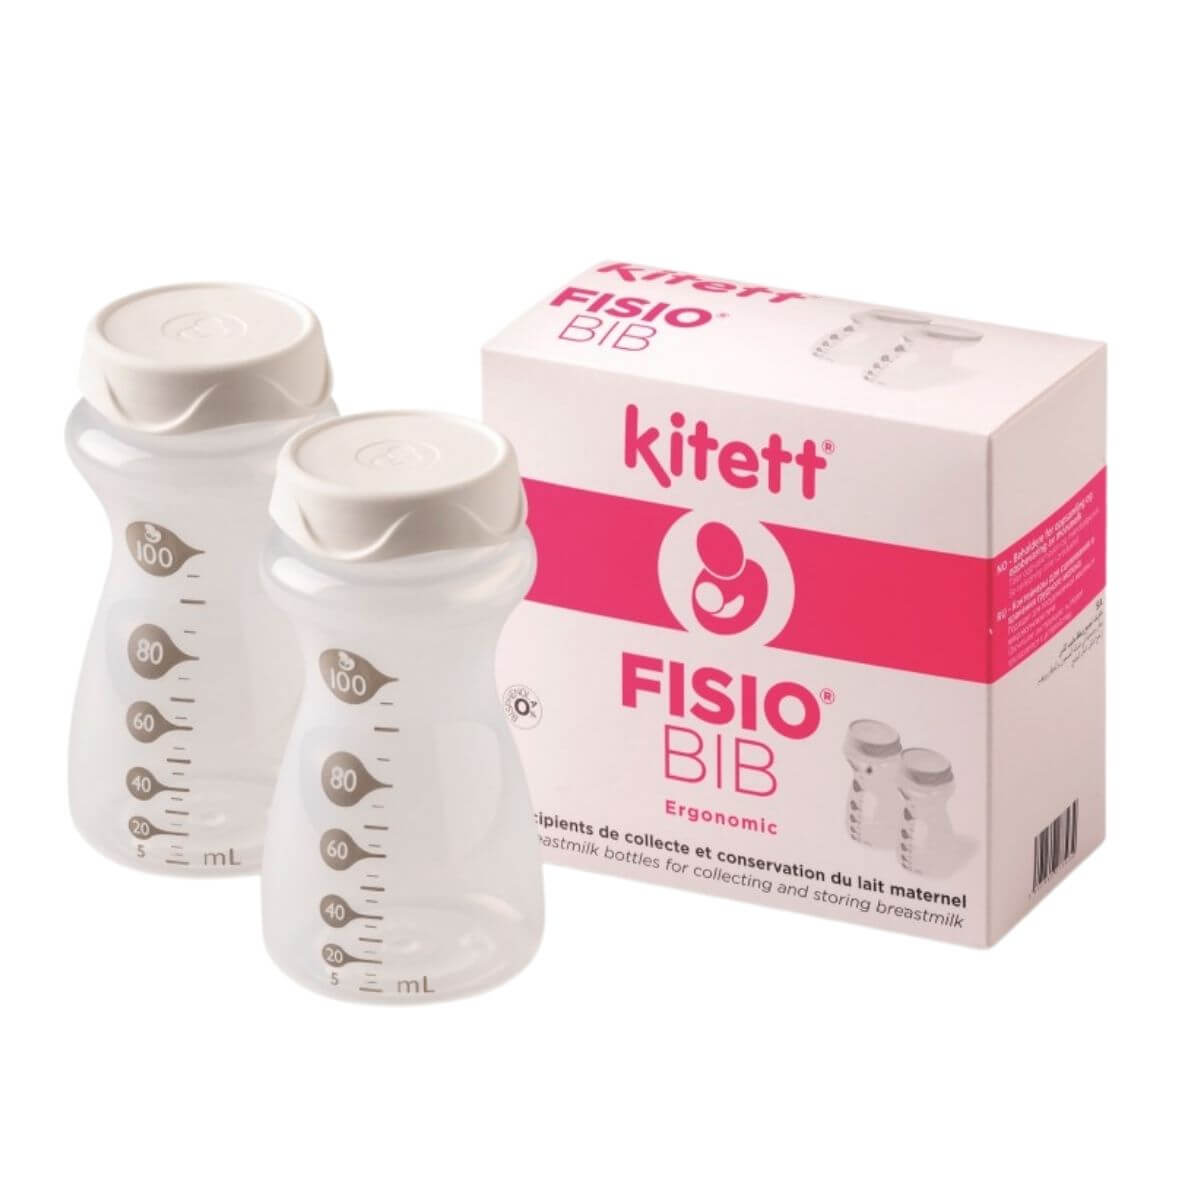 Lot de 2 récipients pour lait maternel (2x100ml) Fisio Bib - Kitett